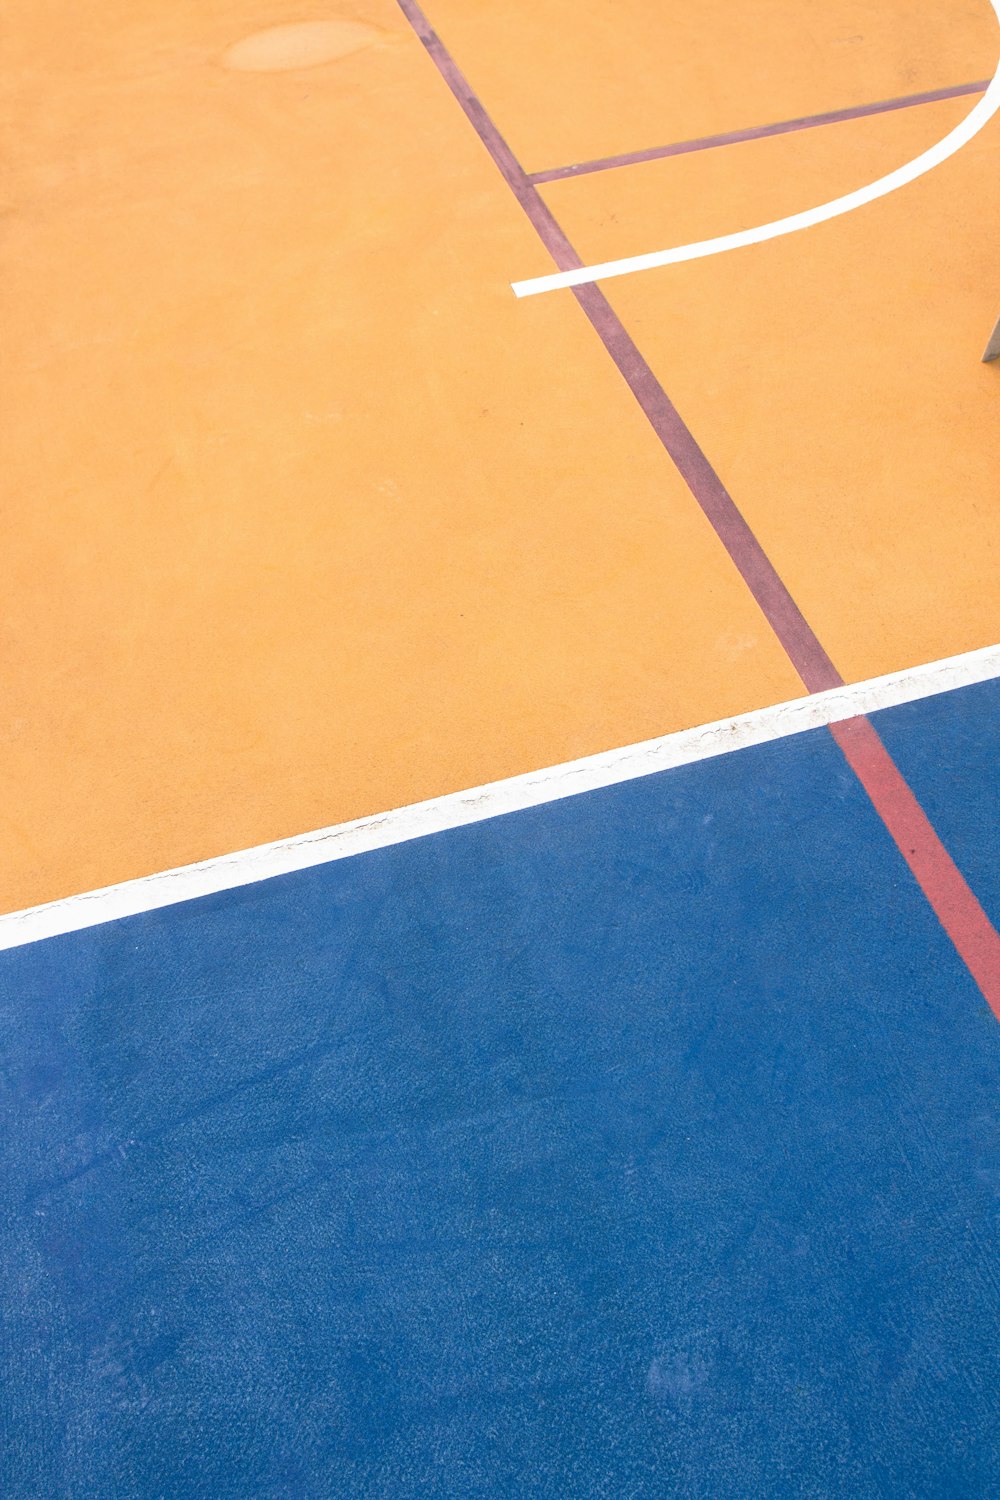 um homem em cima de uma quadra de basquete segurando uma raquete